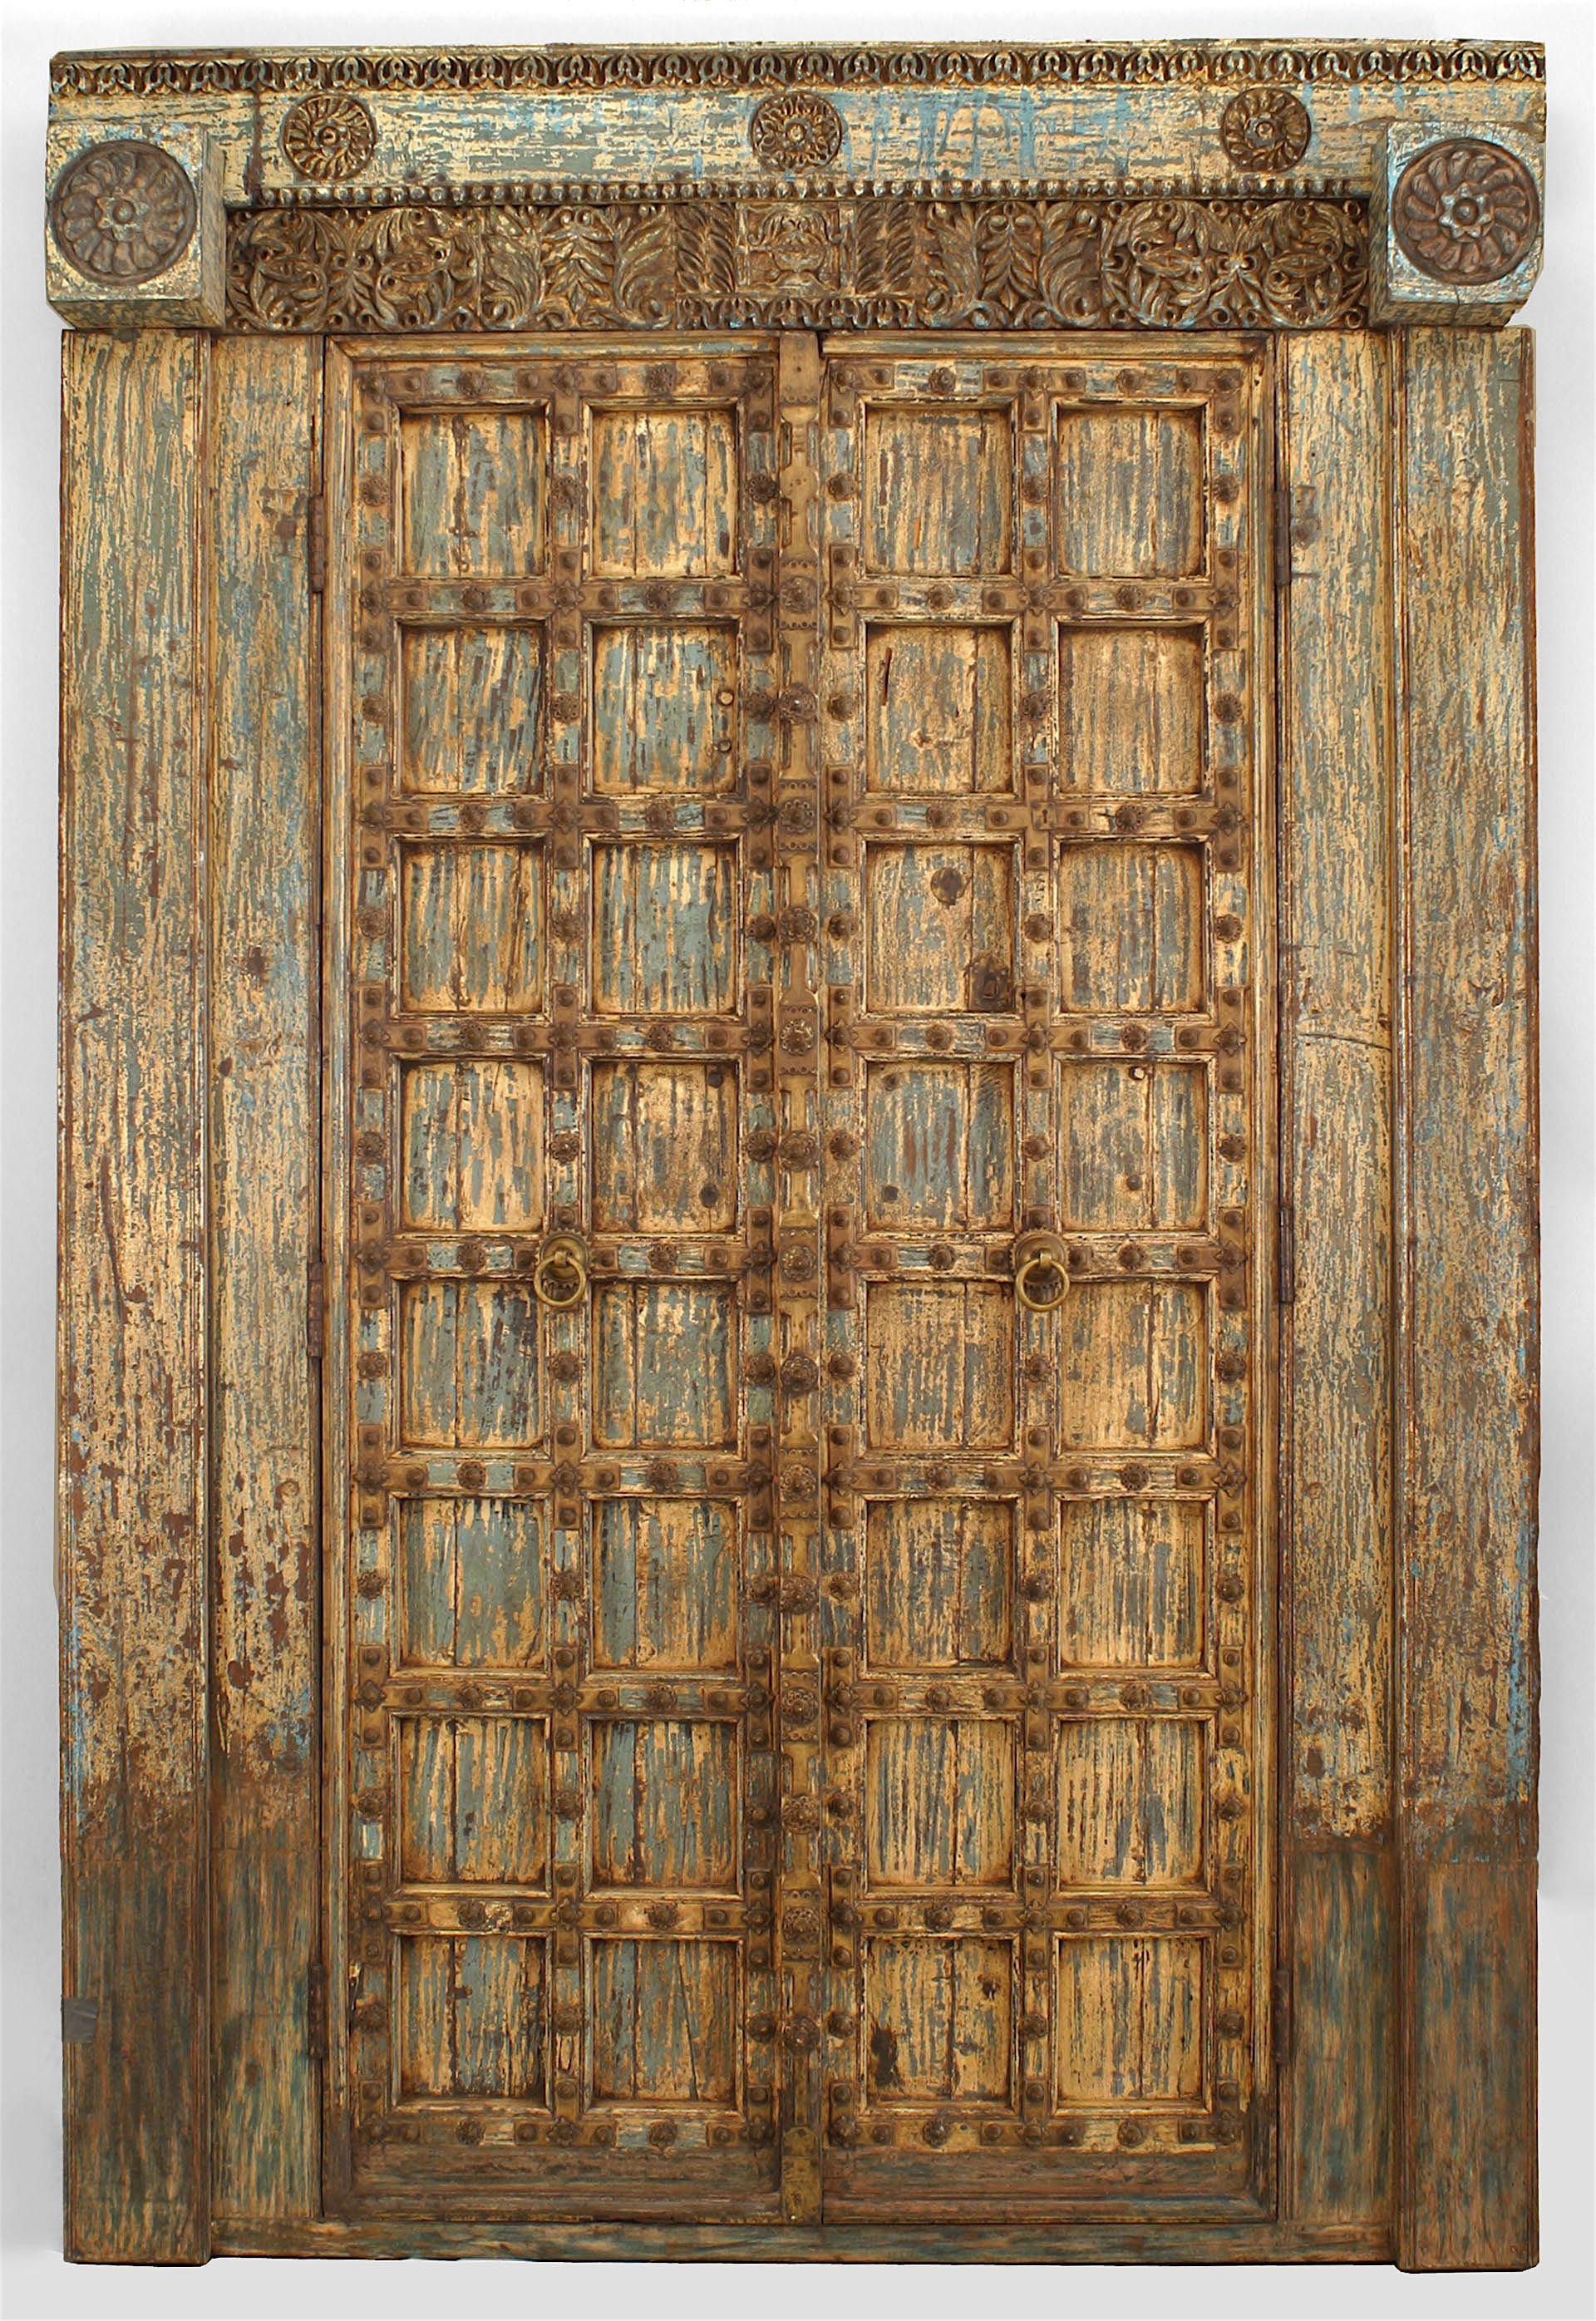 Paire de portes asiatiques (peut-être indiennes) (18/19ème siècle) peintes et sculptées en bleu et blanc dans un cadre avec un fronton séparé décoré de grandes têtes de clous et de garnitures en laiton (PRIX POUR LA PAIRE).
